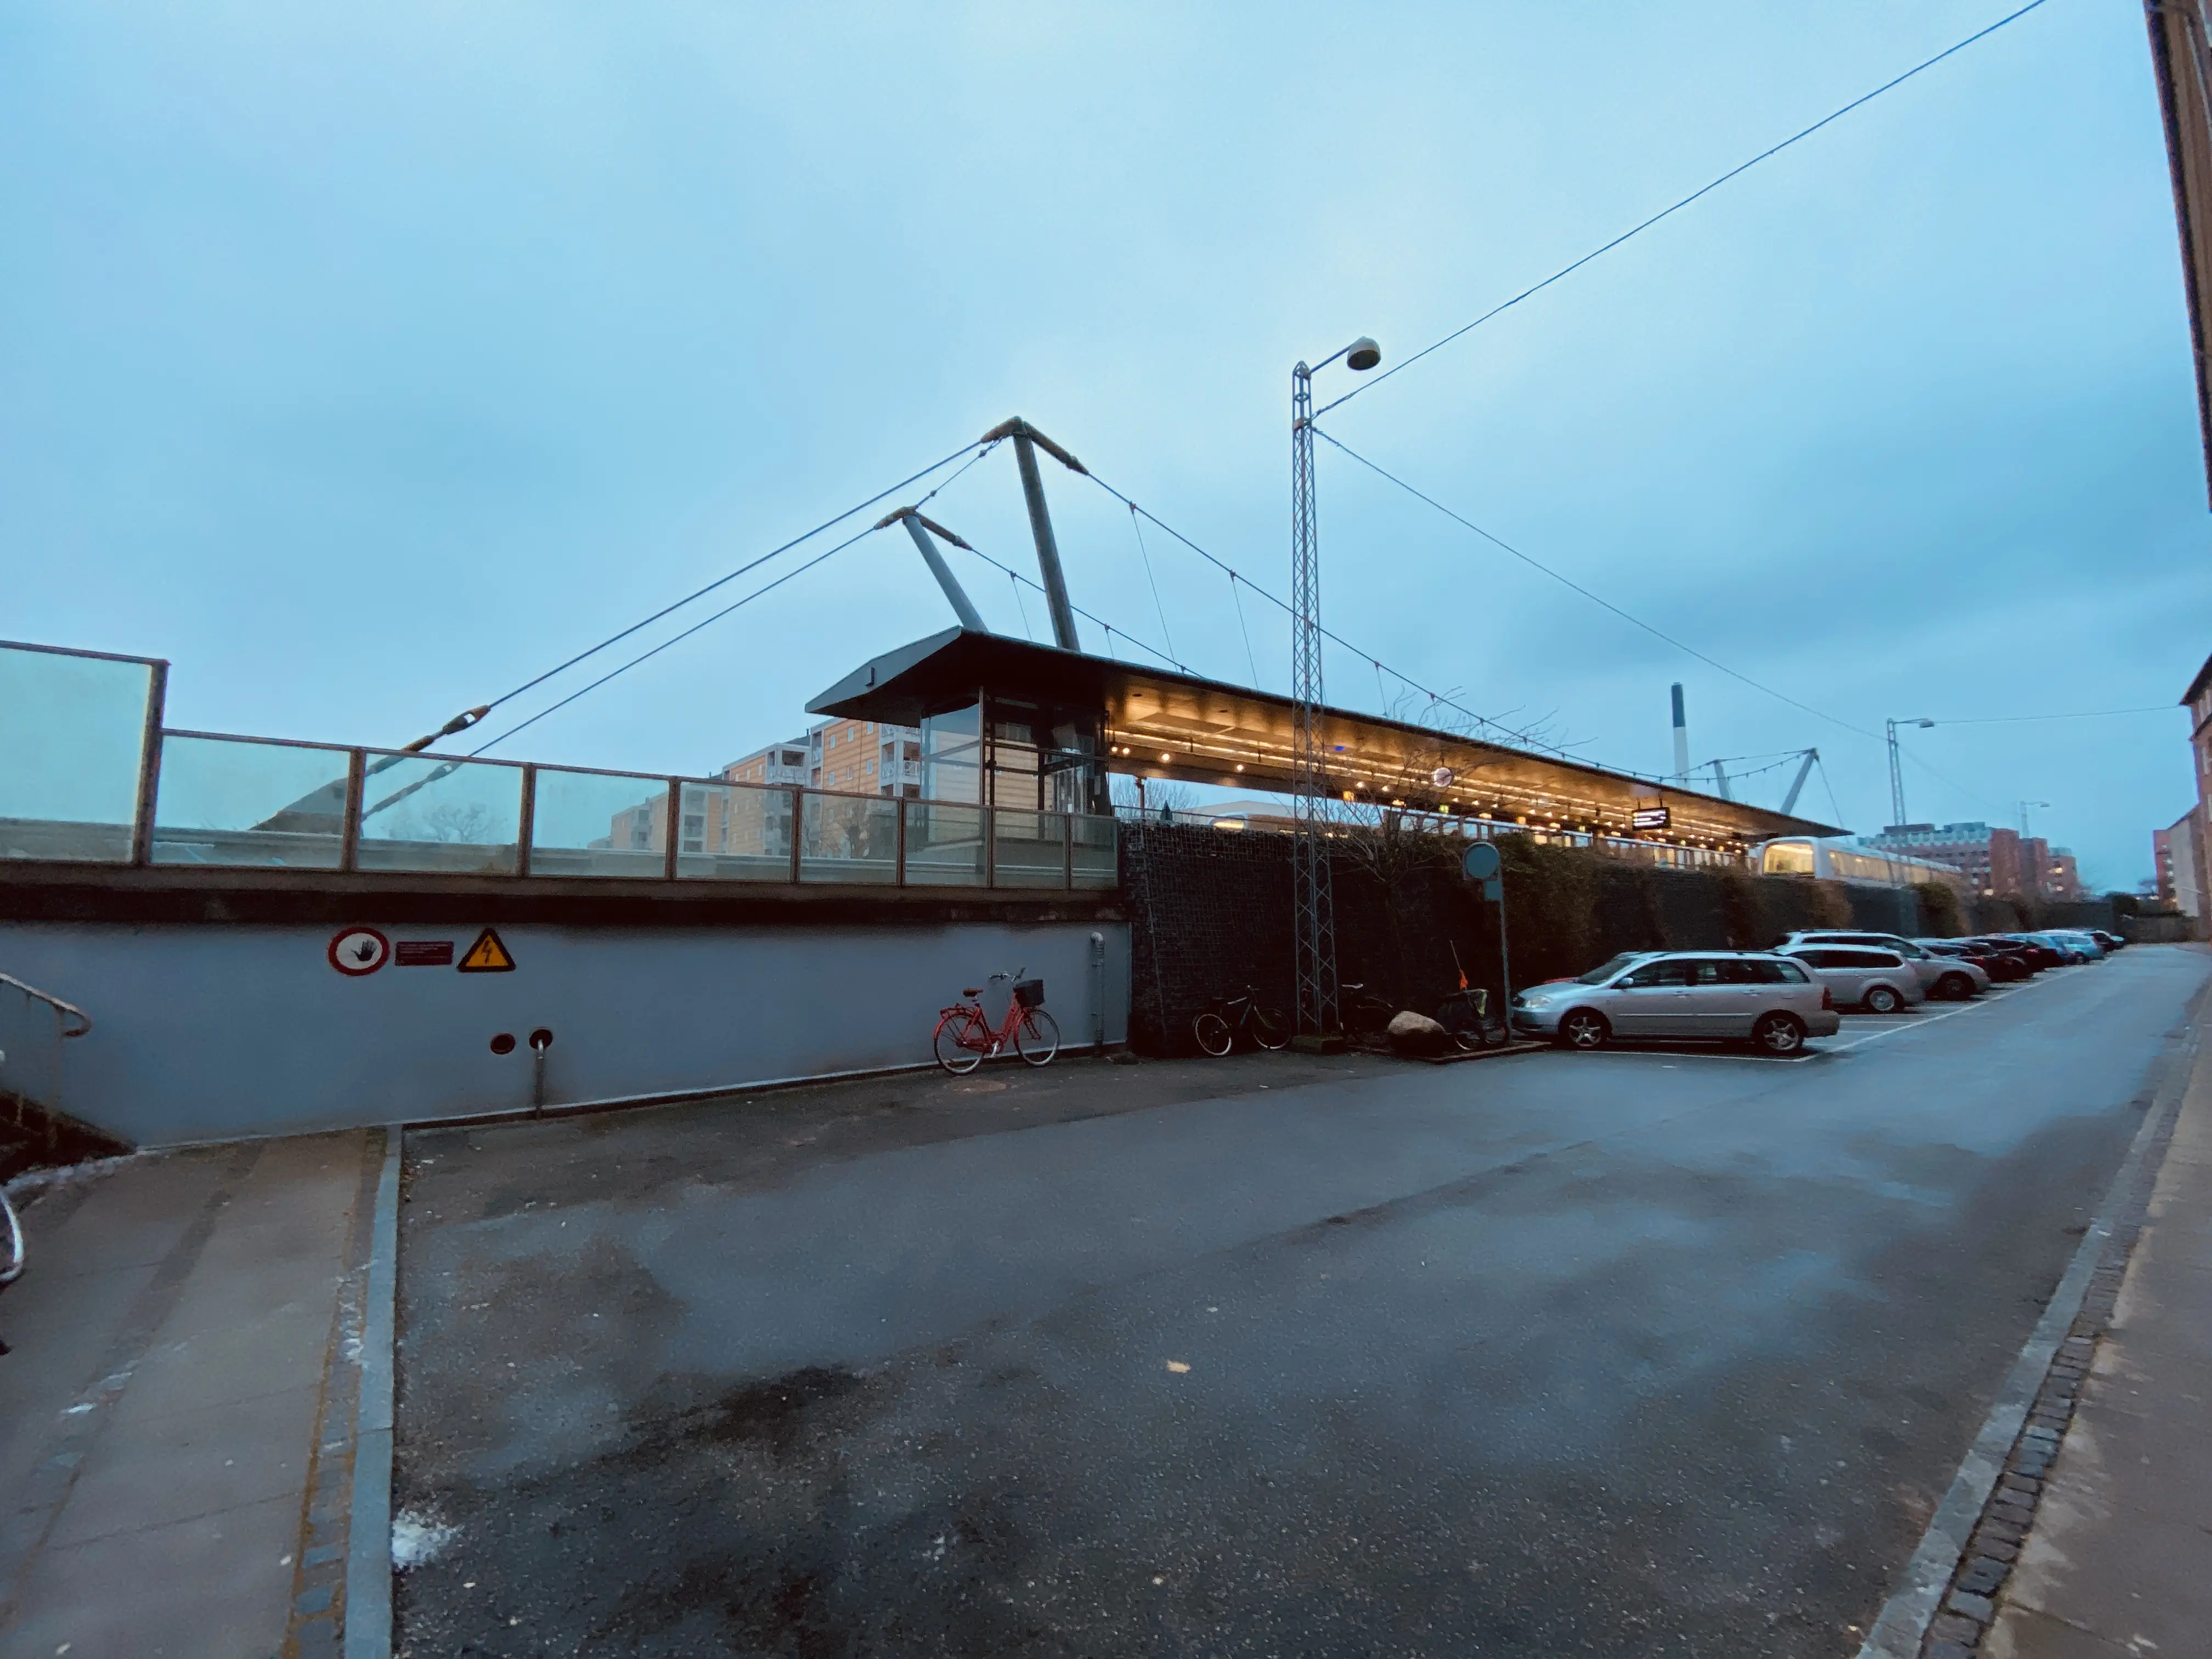 Lindevang S-togstrinbræt er nedlagt og blevet til Lindevang Metrostation.